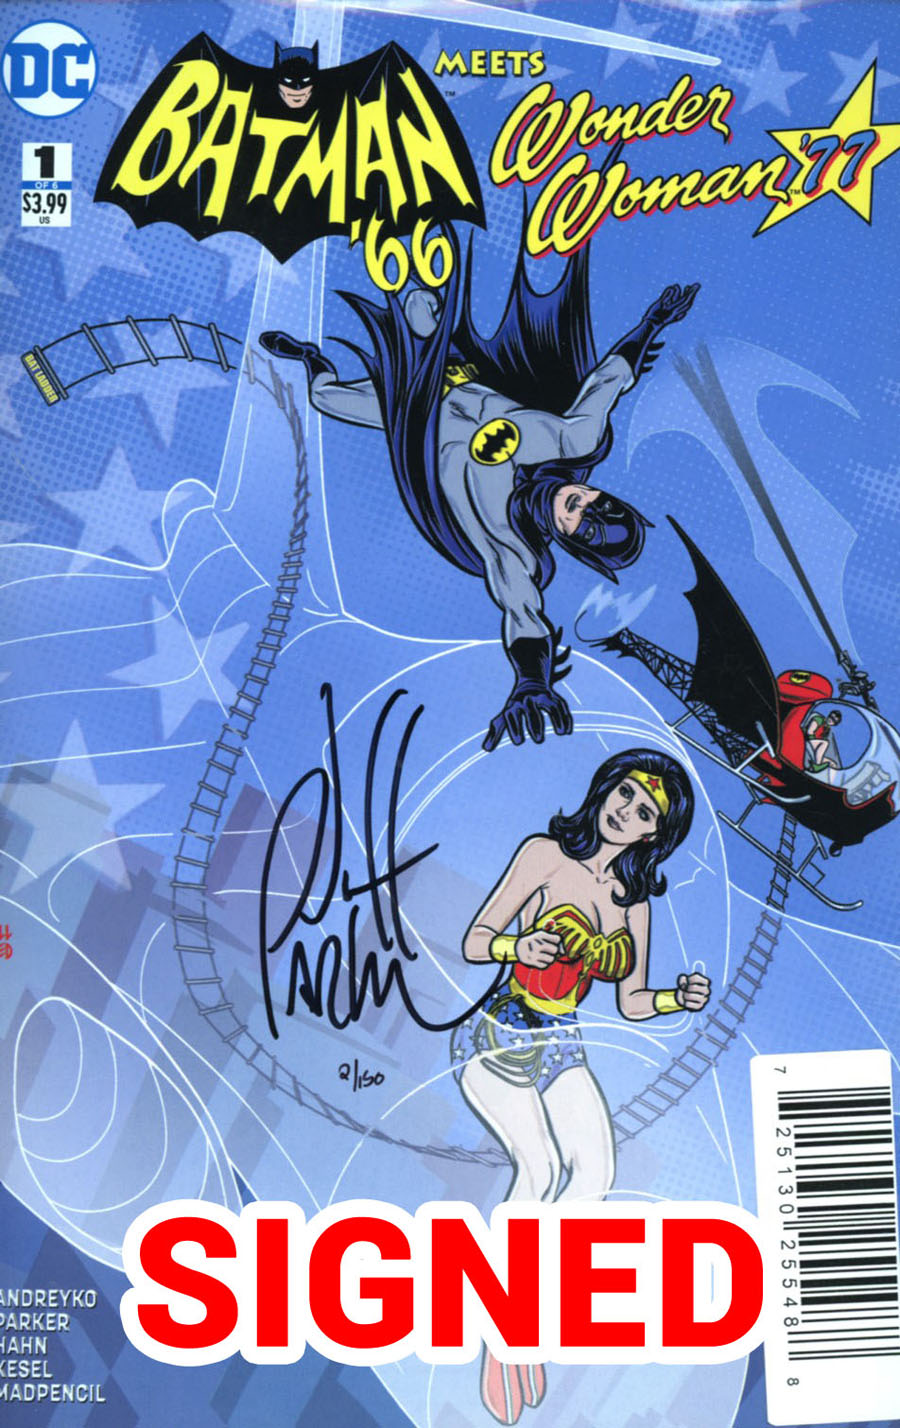 Batman 66 Meets Wonder Woman 77 #1 Cover C DF Signed By Jeff Parker